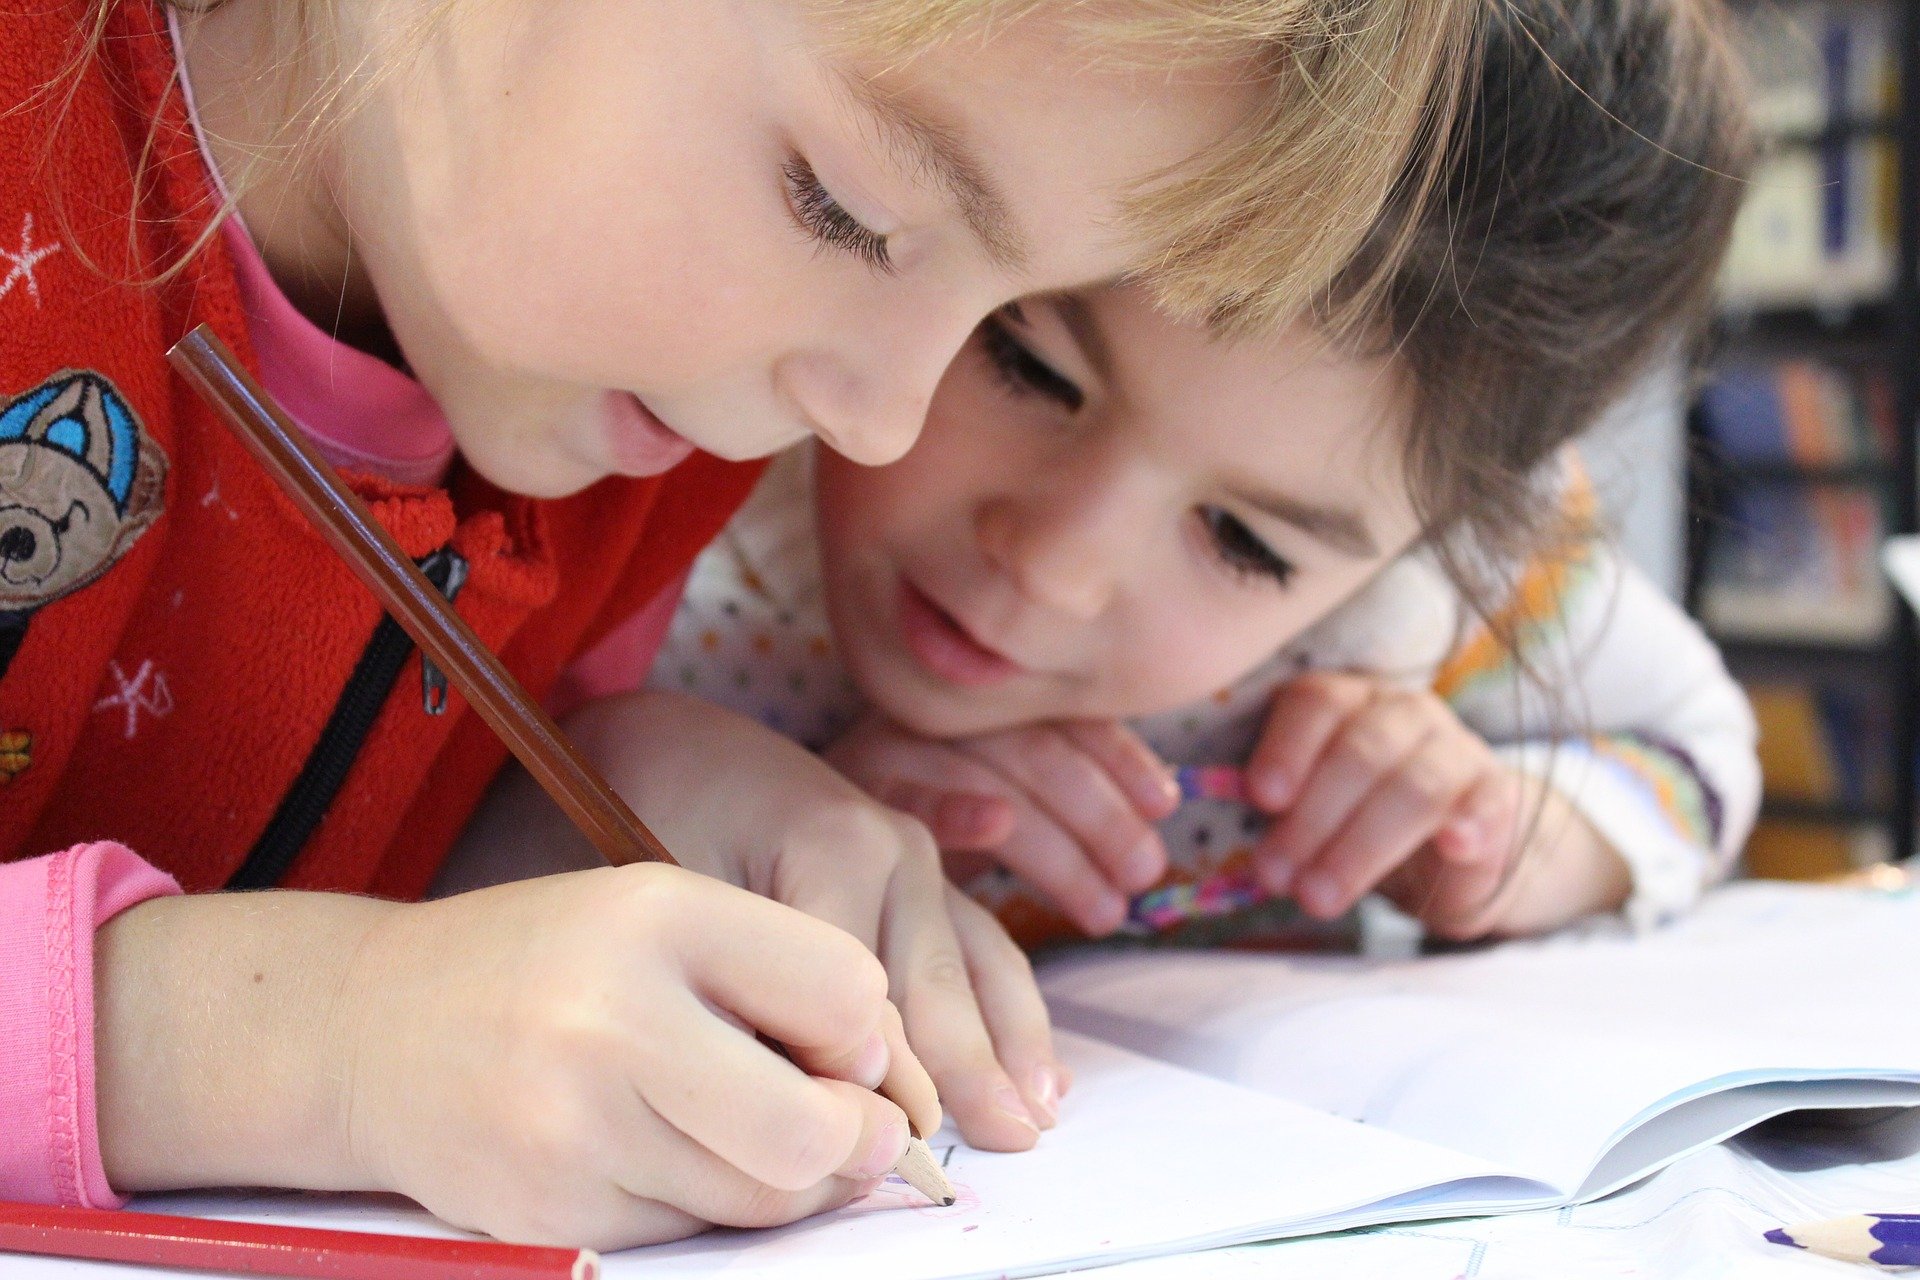 L’inclusion scolaire concerne cette année près de 18 000 enfants dans l’académie de Toulouse. Crédit : Pixabay.